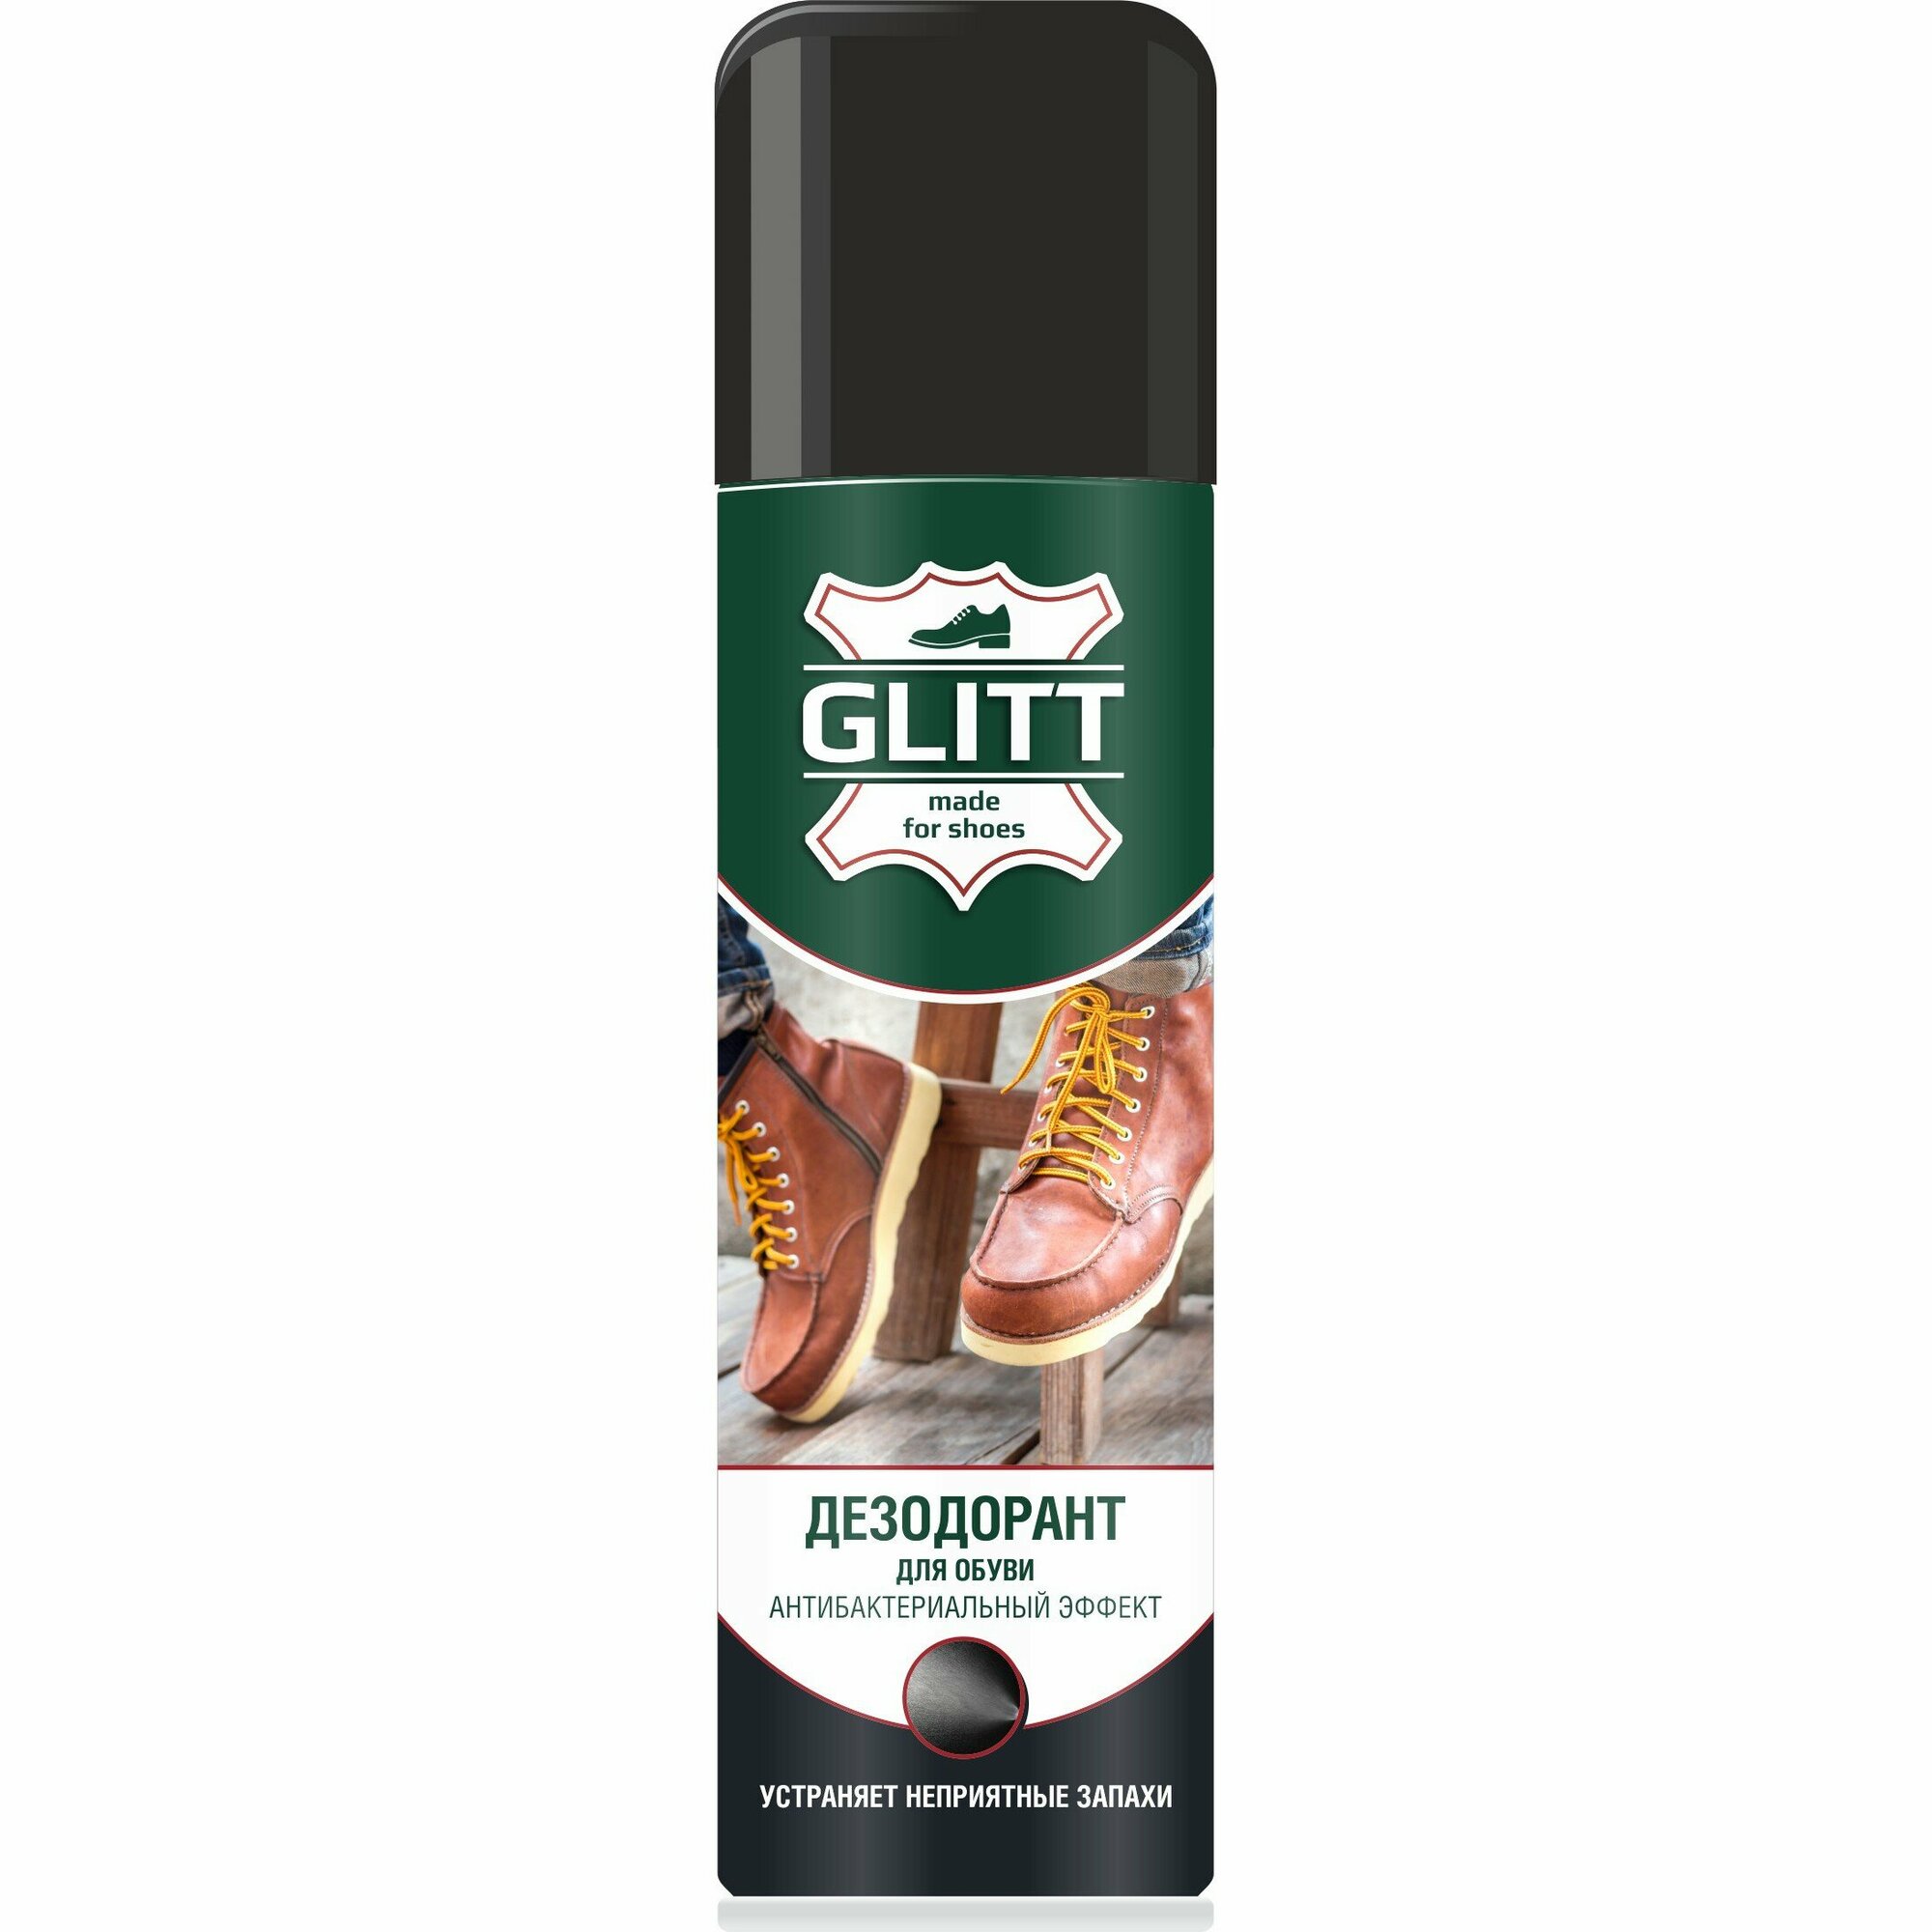 Дезодорант для обуви Glitt, антибактериальный эффект, 150мл